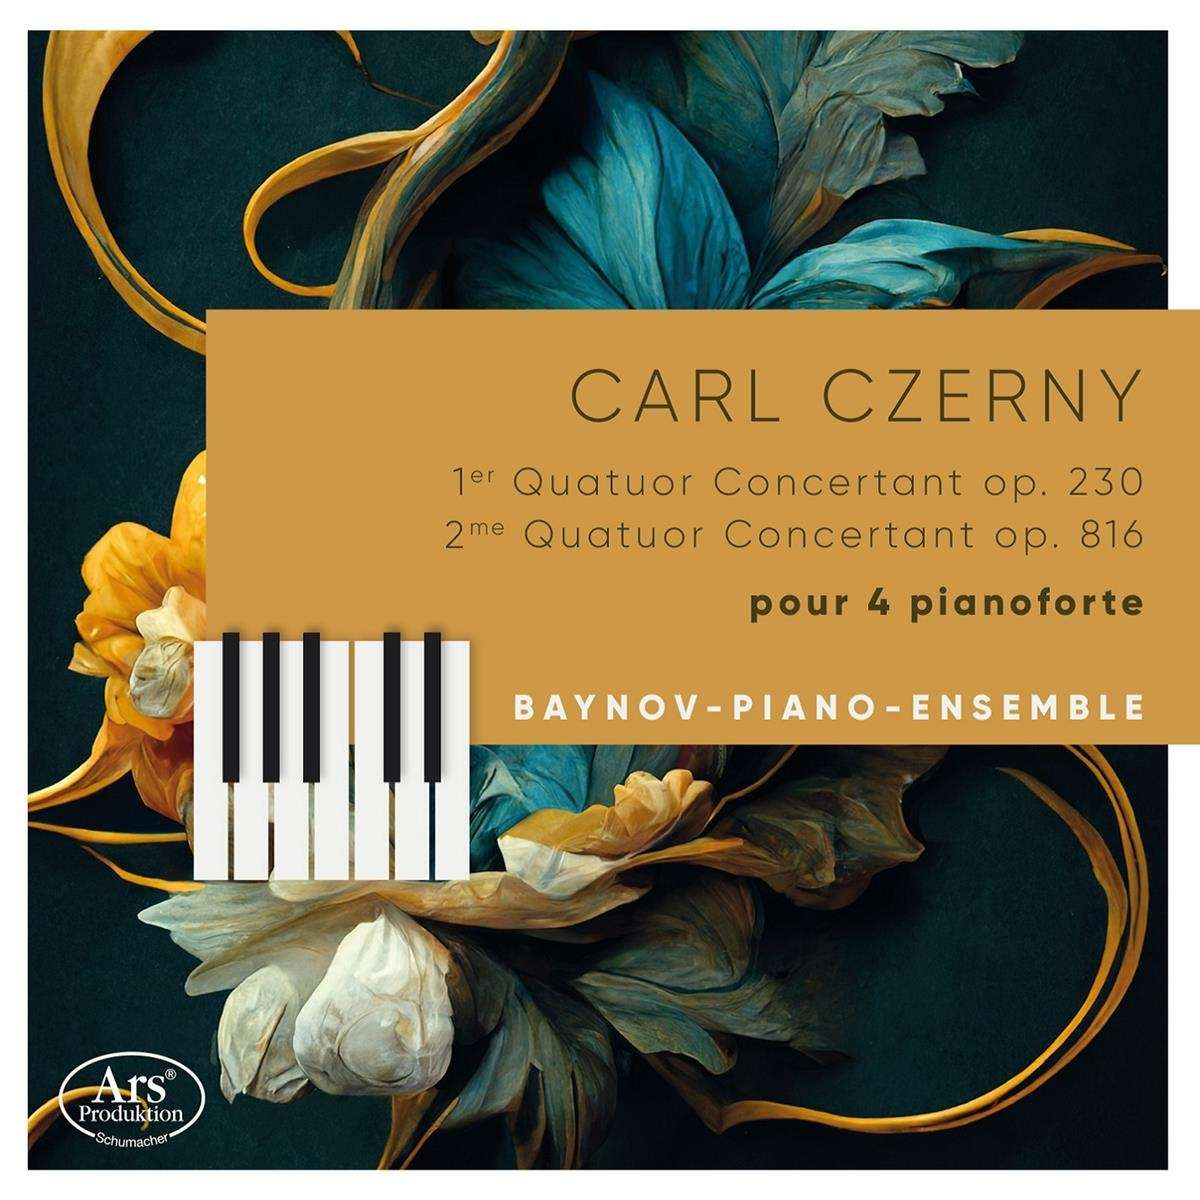 CARL CZERNY: QUATUORS CONCERTANTS POUR 4 PIANOFORTE